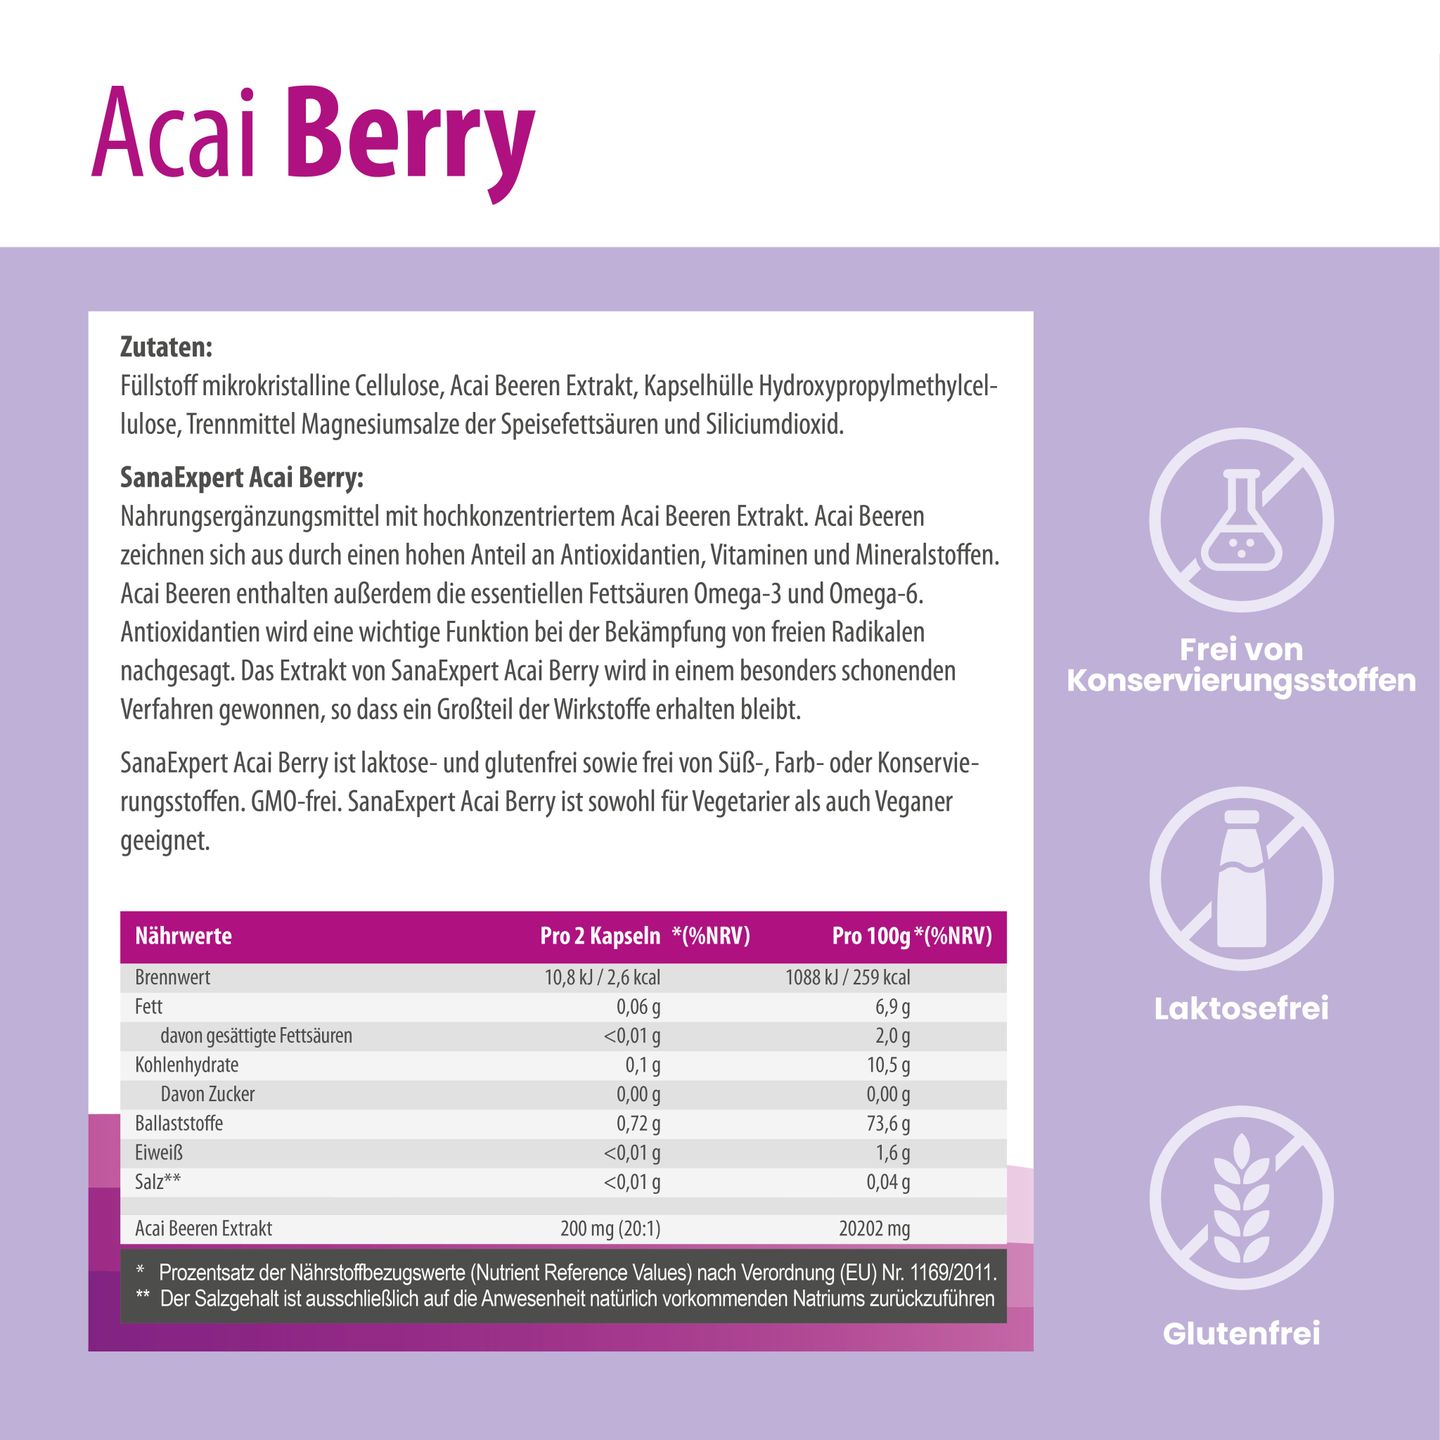 Detaillierte Nährwertangaben und Zutatenliste der SanaExpert Acai Berry Kapseln auf weißem Hintergrund.